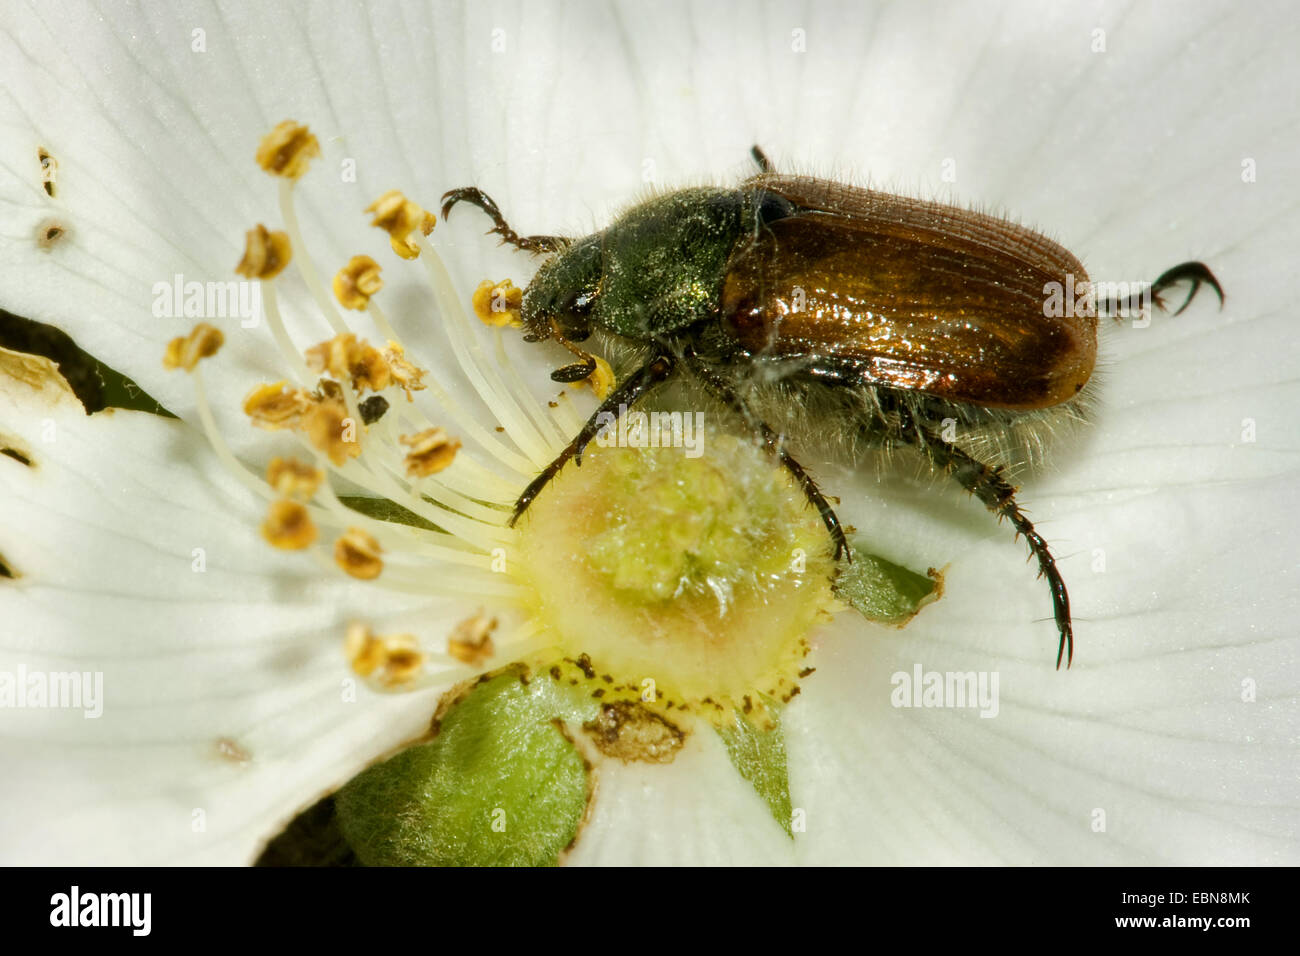 Le jardin, le hanneton horticole (Phyllopertha horticola feuillage, Phylloperta horticola), se nourrissant de pollen sur une fleur, Allemagne Banque D'Images